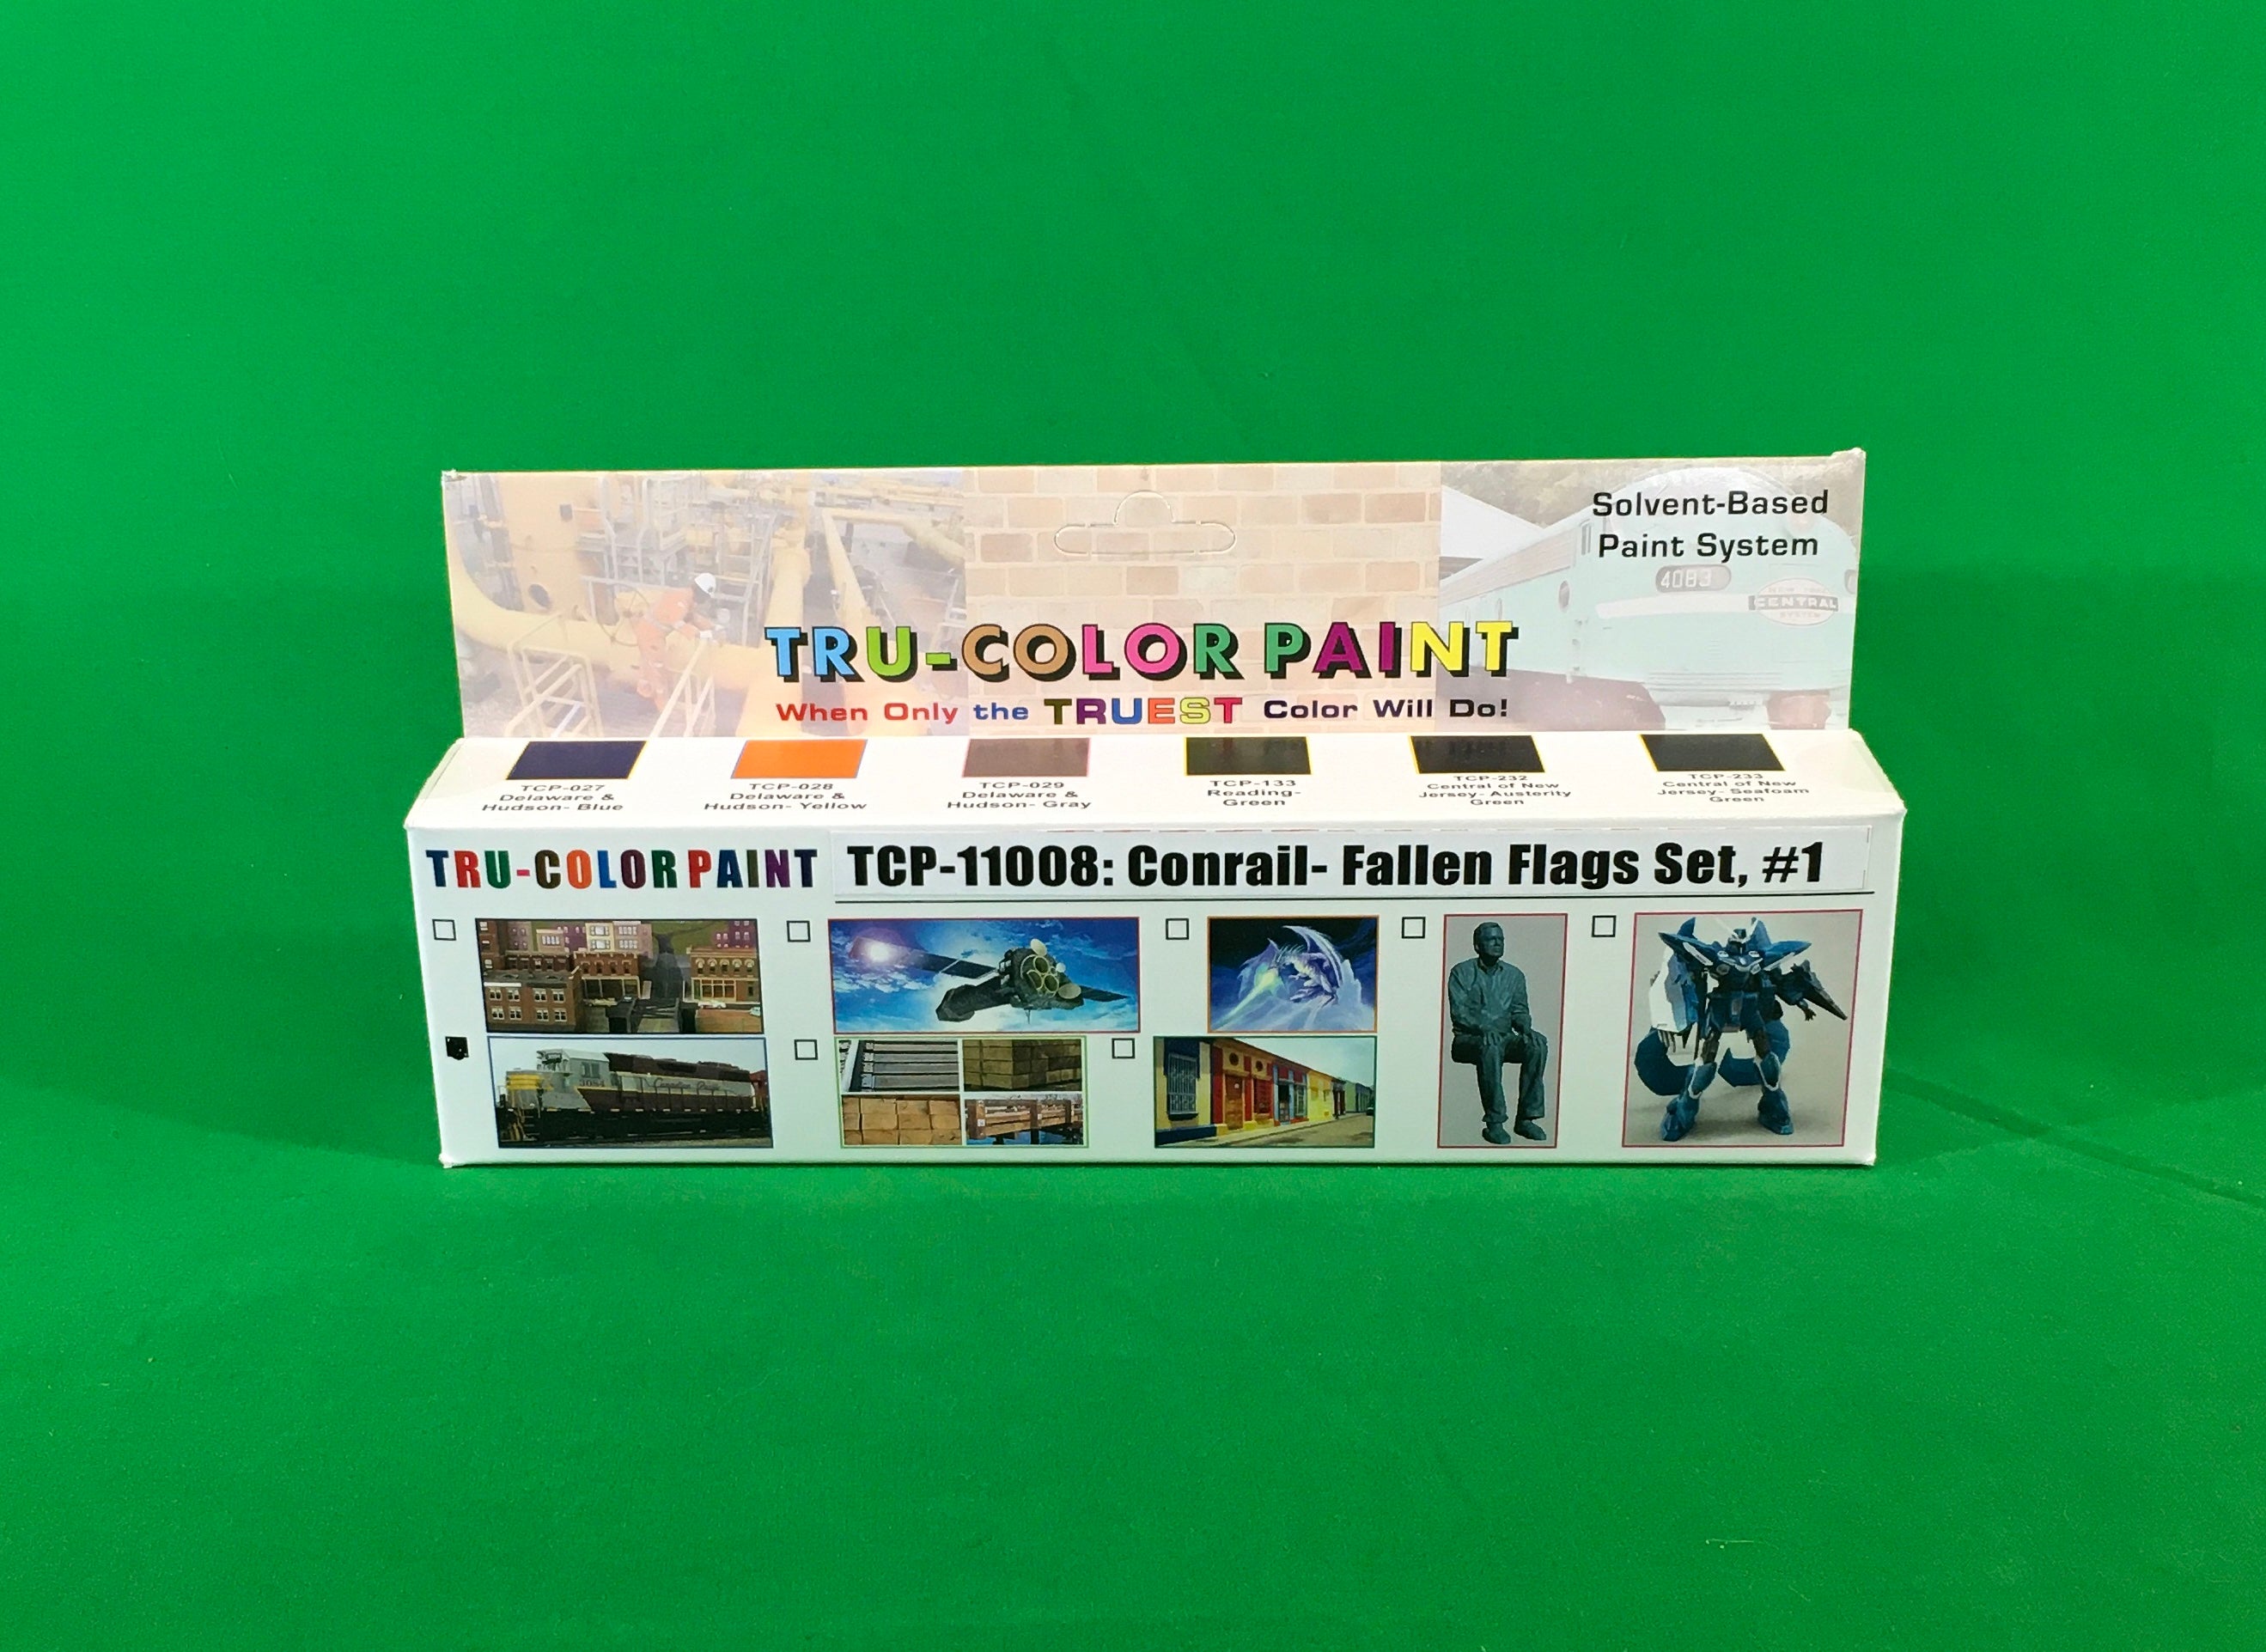 Tru-Color Paint - TCP-11008 - Conrail - Fallen Flags Set #1 (Solvent-Based Paint)